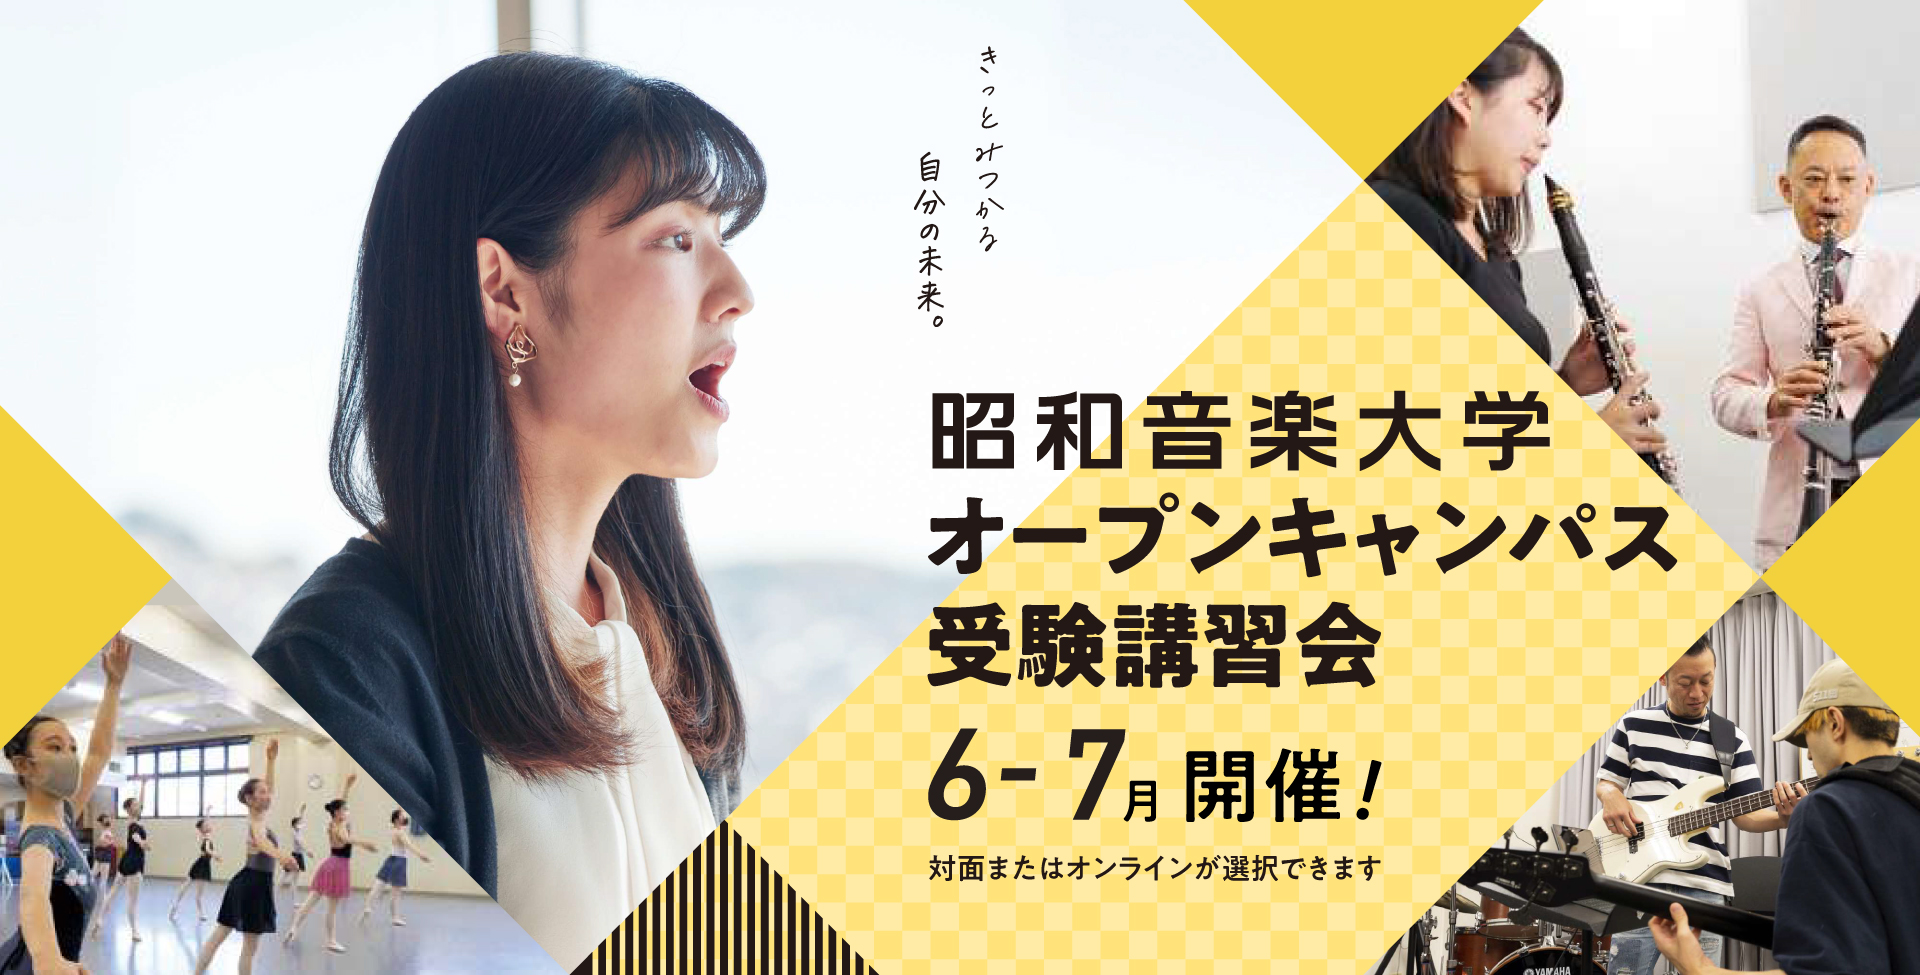 昭和音楽大学 オープンキャンパス・受験講習会 6-7月開催！ 対面またはオンラインが選択できます